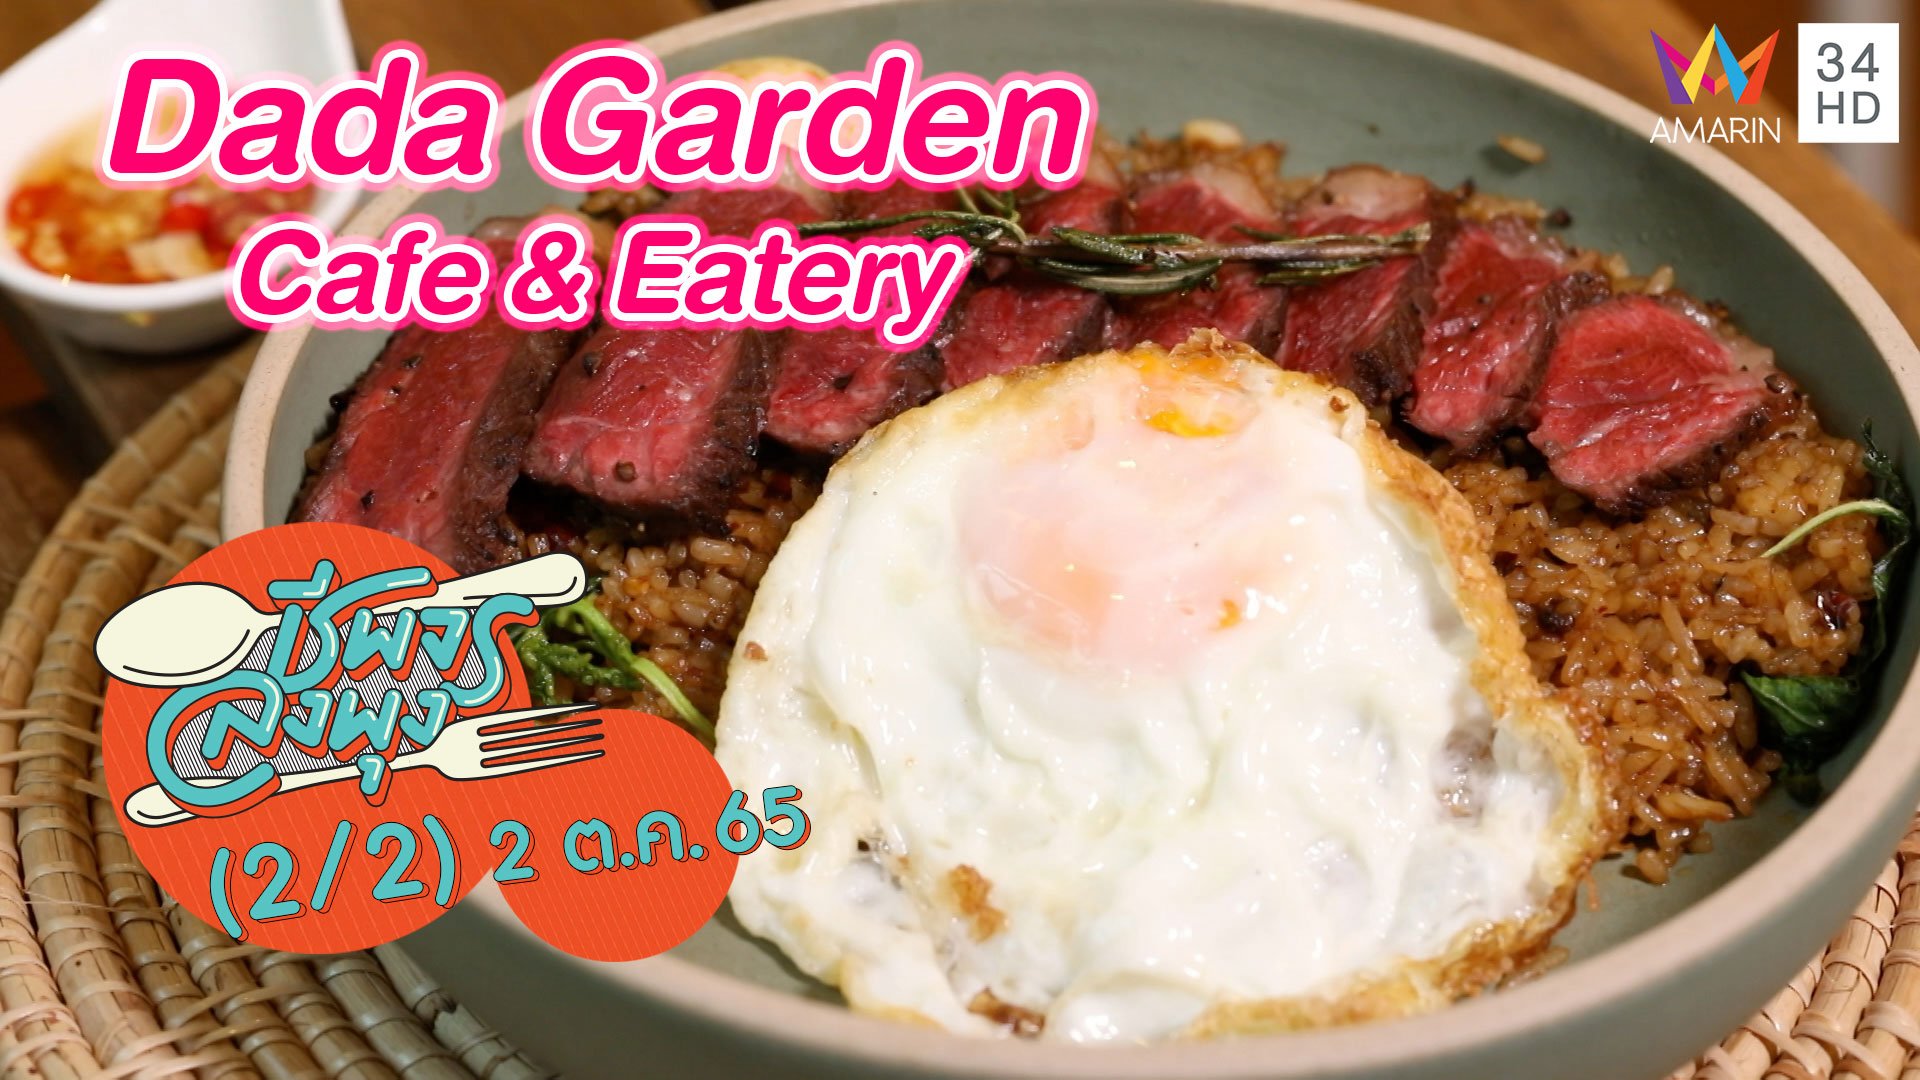 คาเฟ่สไตล์โฮมมี่ @ "ร้าน Dada Garden Cafe & Eatery" | ชีพจรลงพุง | 2 ต.ค. 65 (2/2) | AMARIN TVHD34